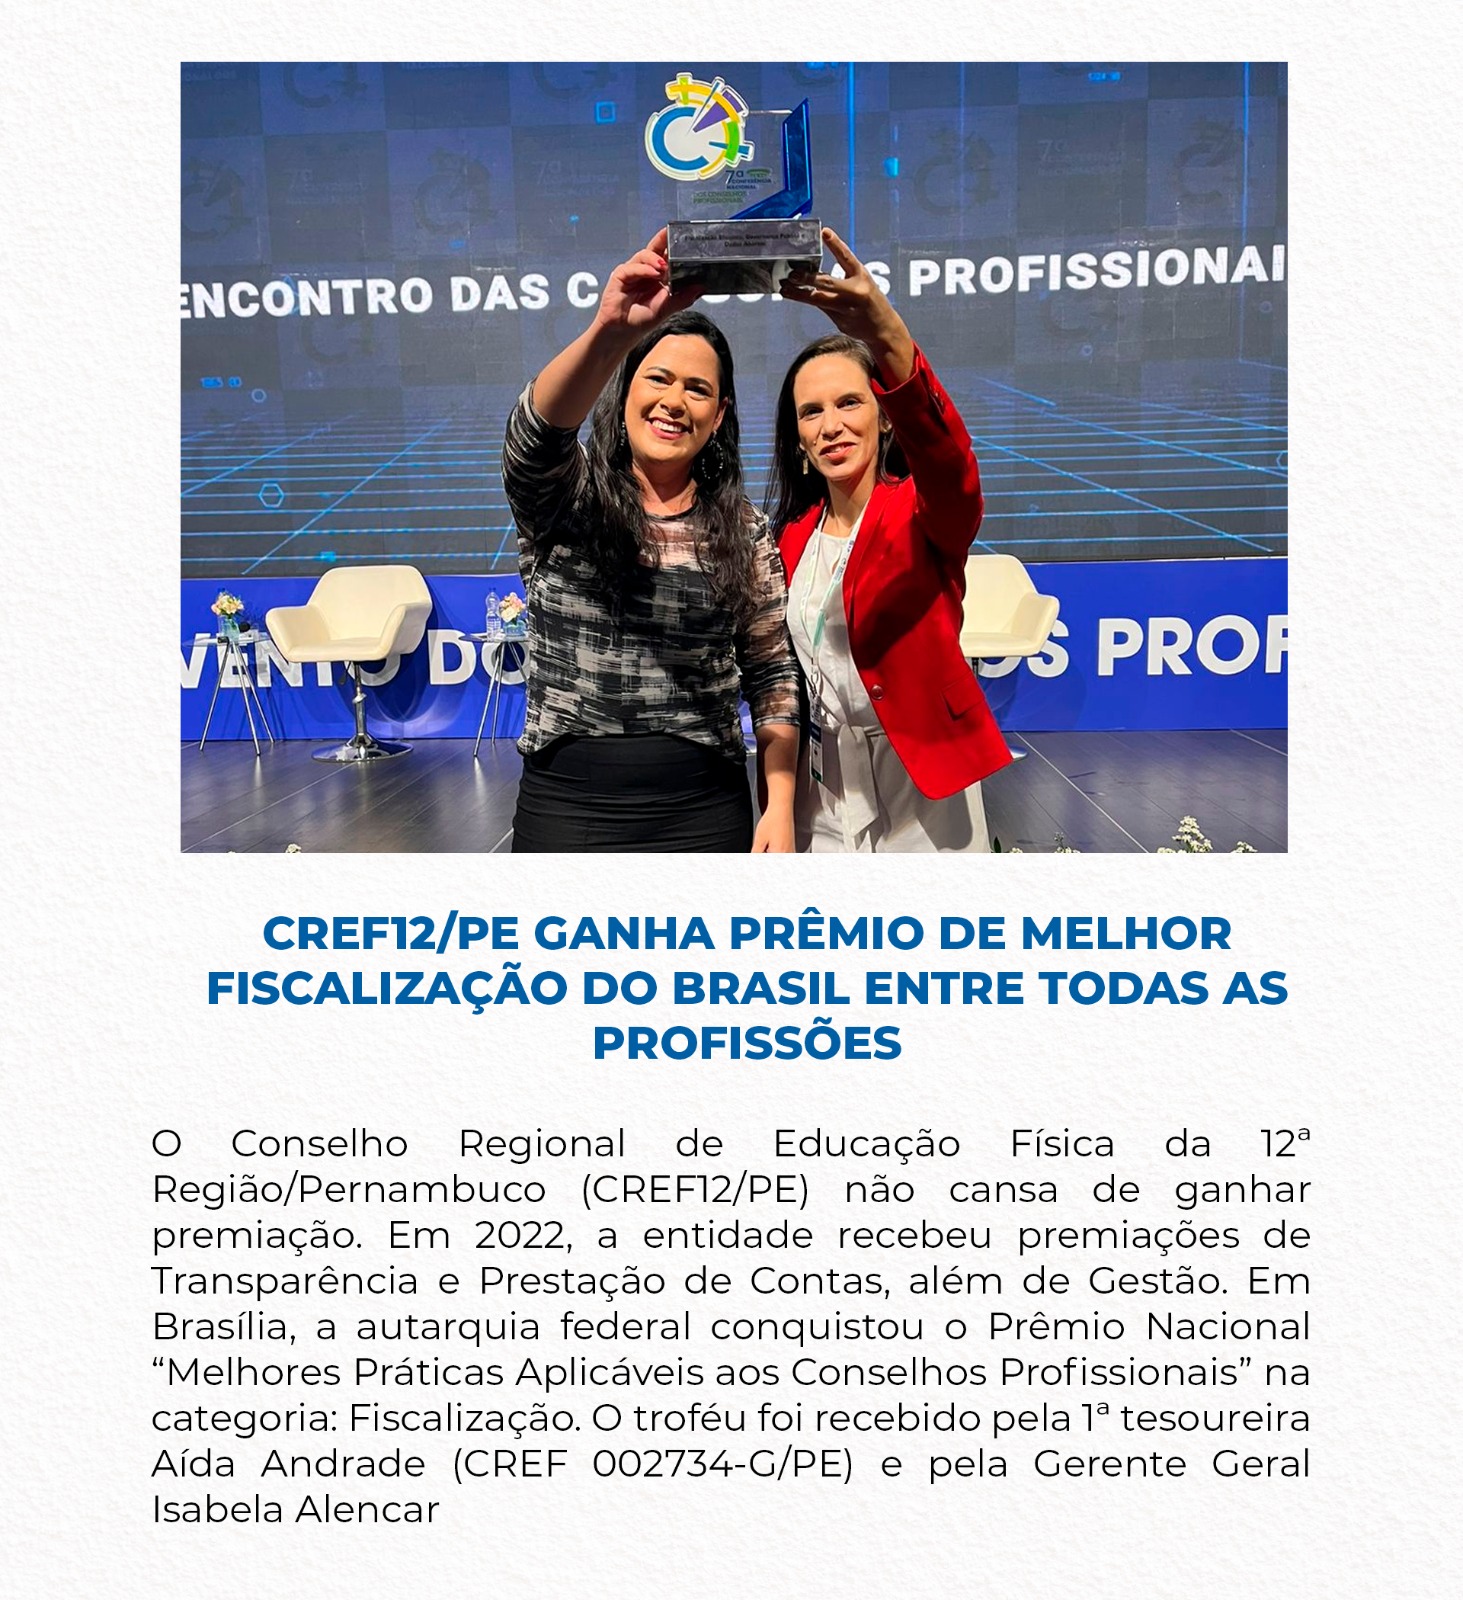 CREF12/PE ganha prêmio de melhor fiscalização do Brasil entre todas as profissões